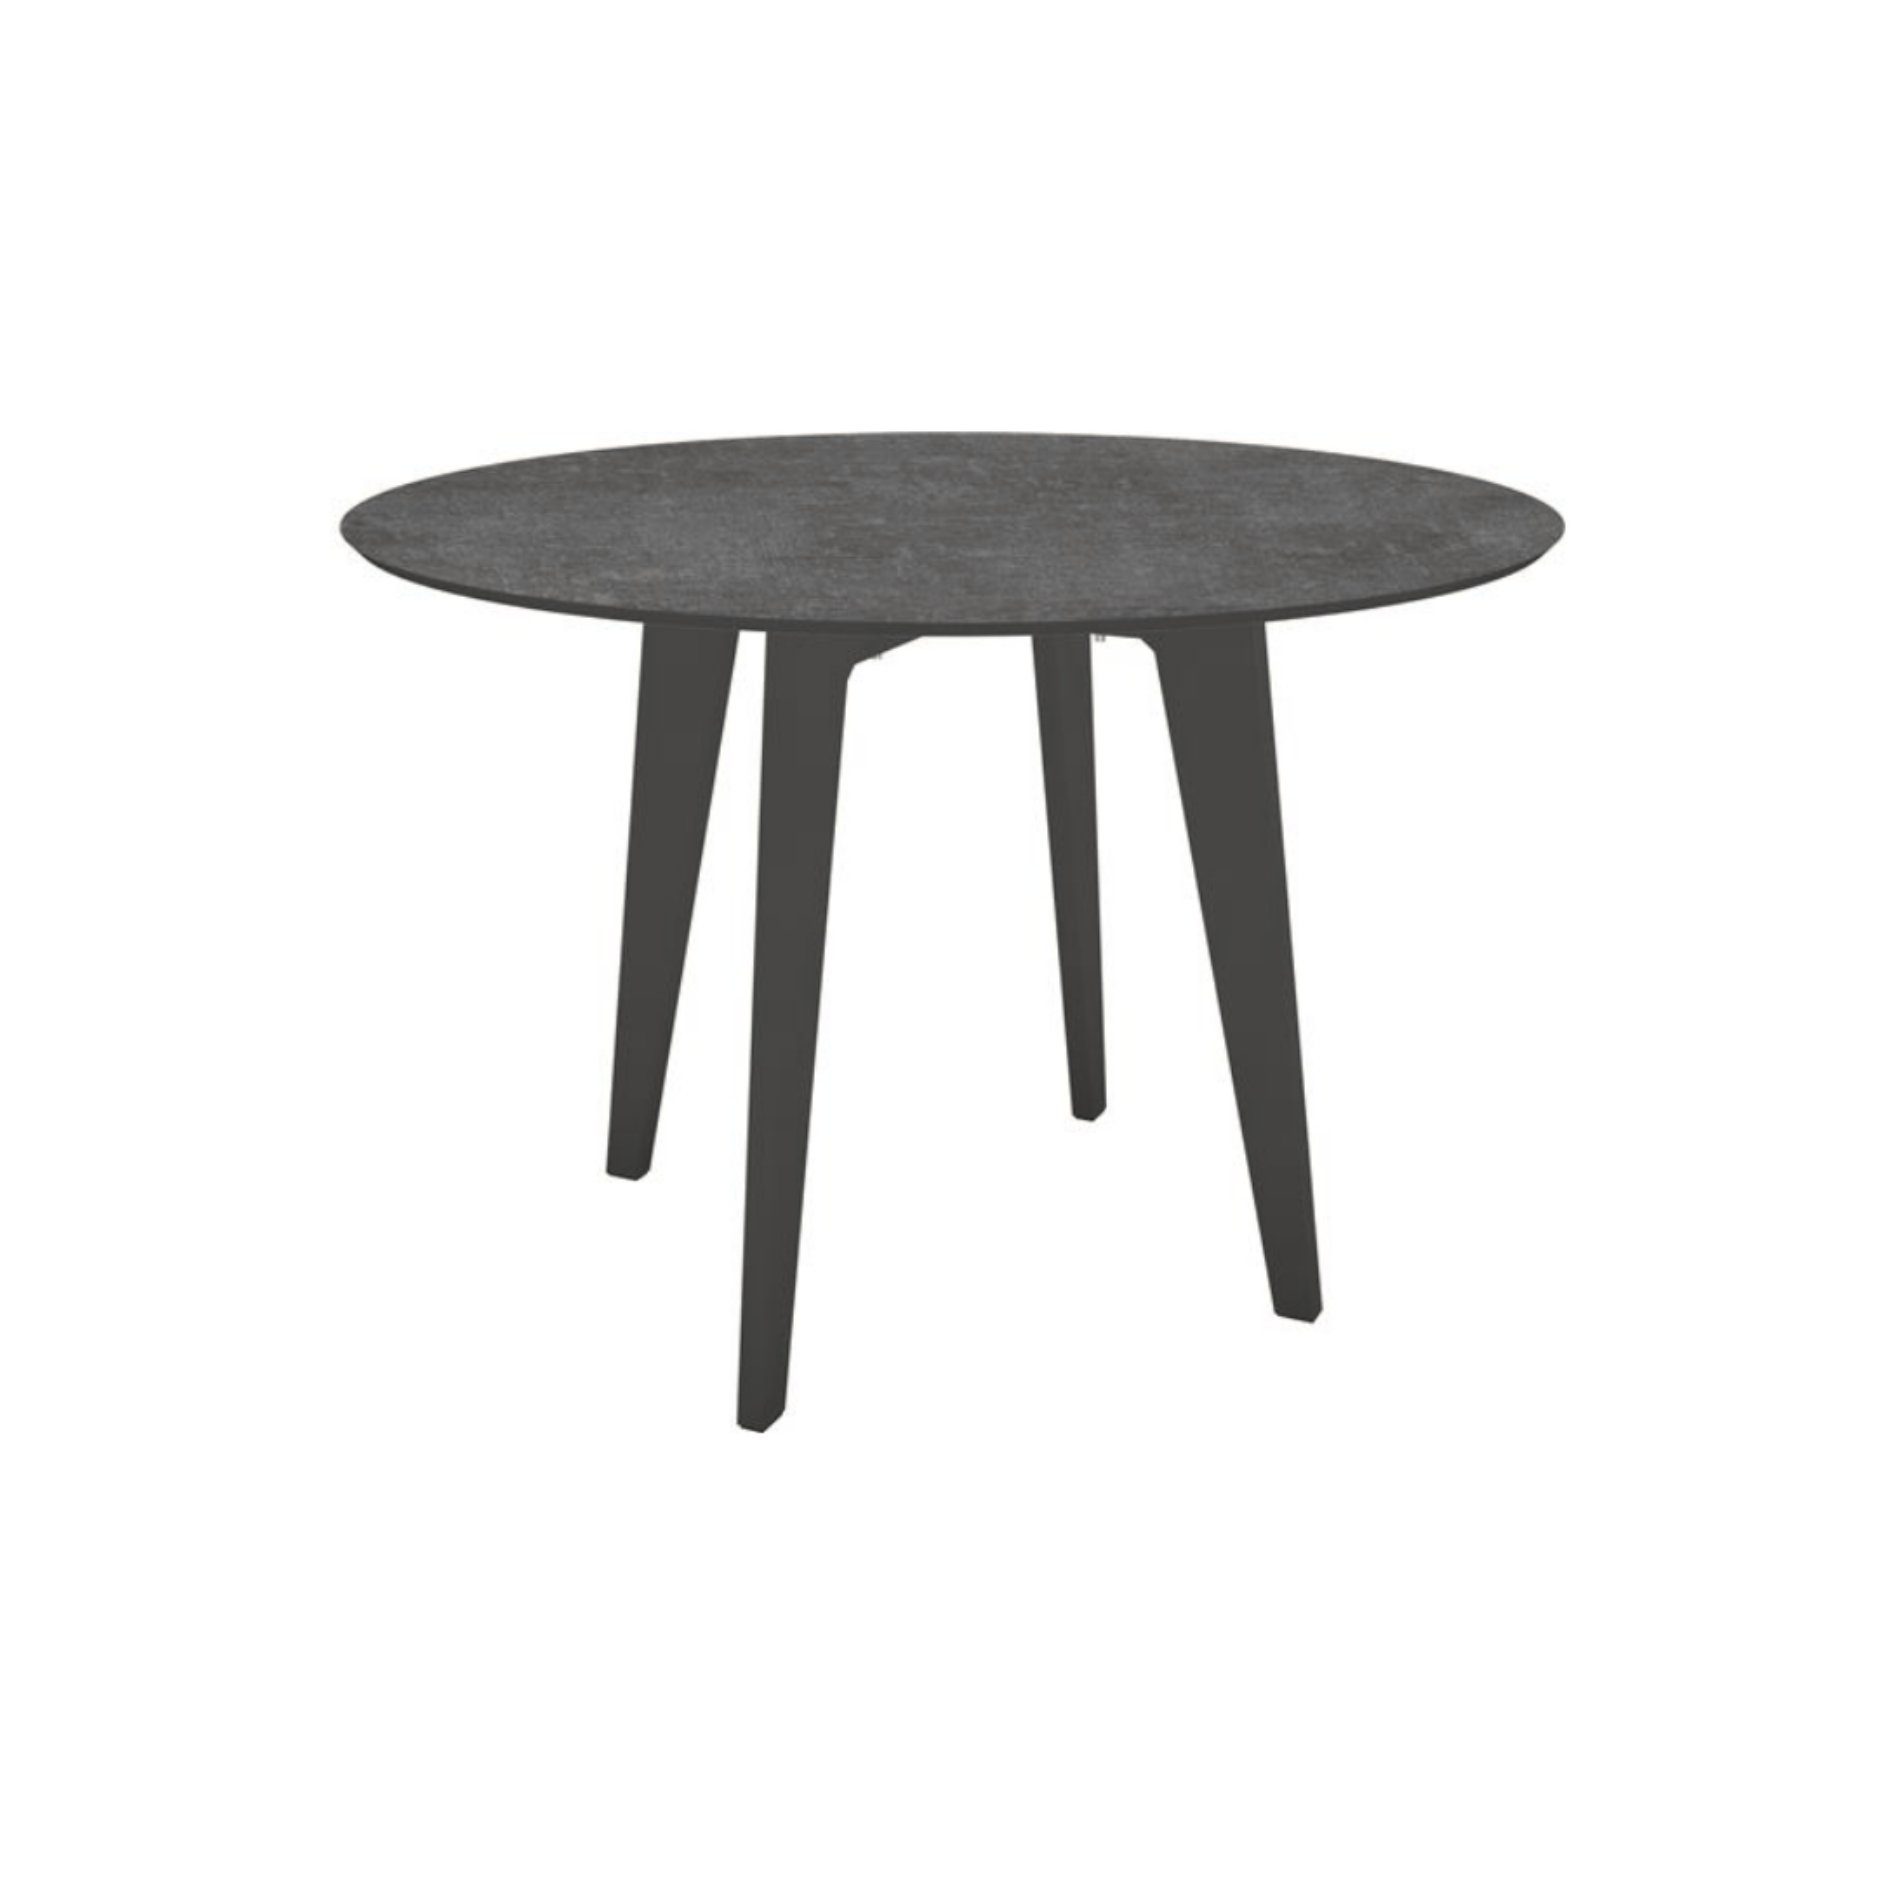 Stern Gartentisch rund 110cm oder 134cm, Aluminium anthrazit, Tischplatte HPL Metallic Grau